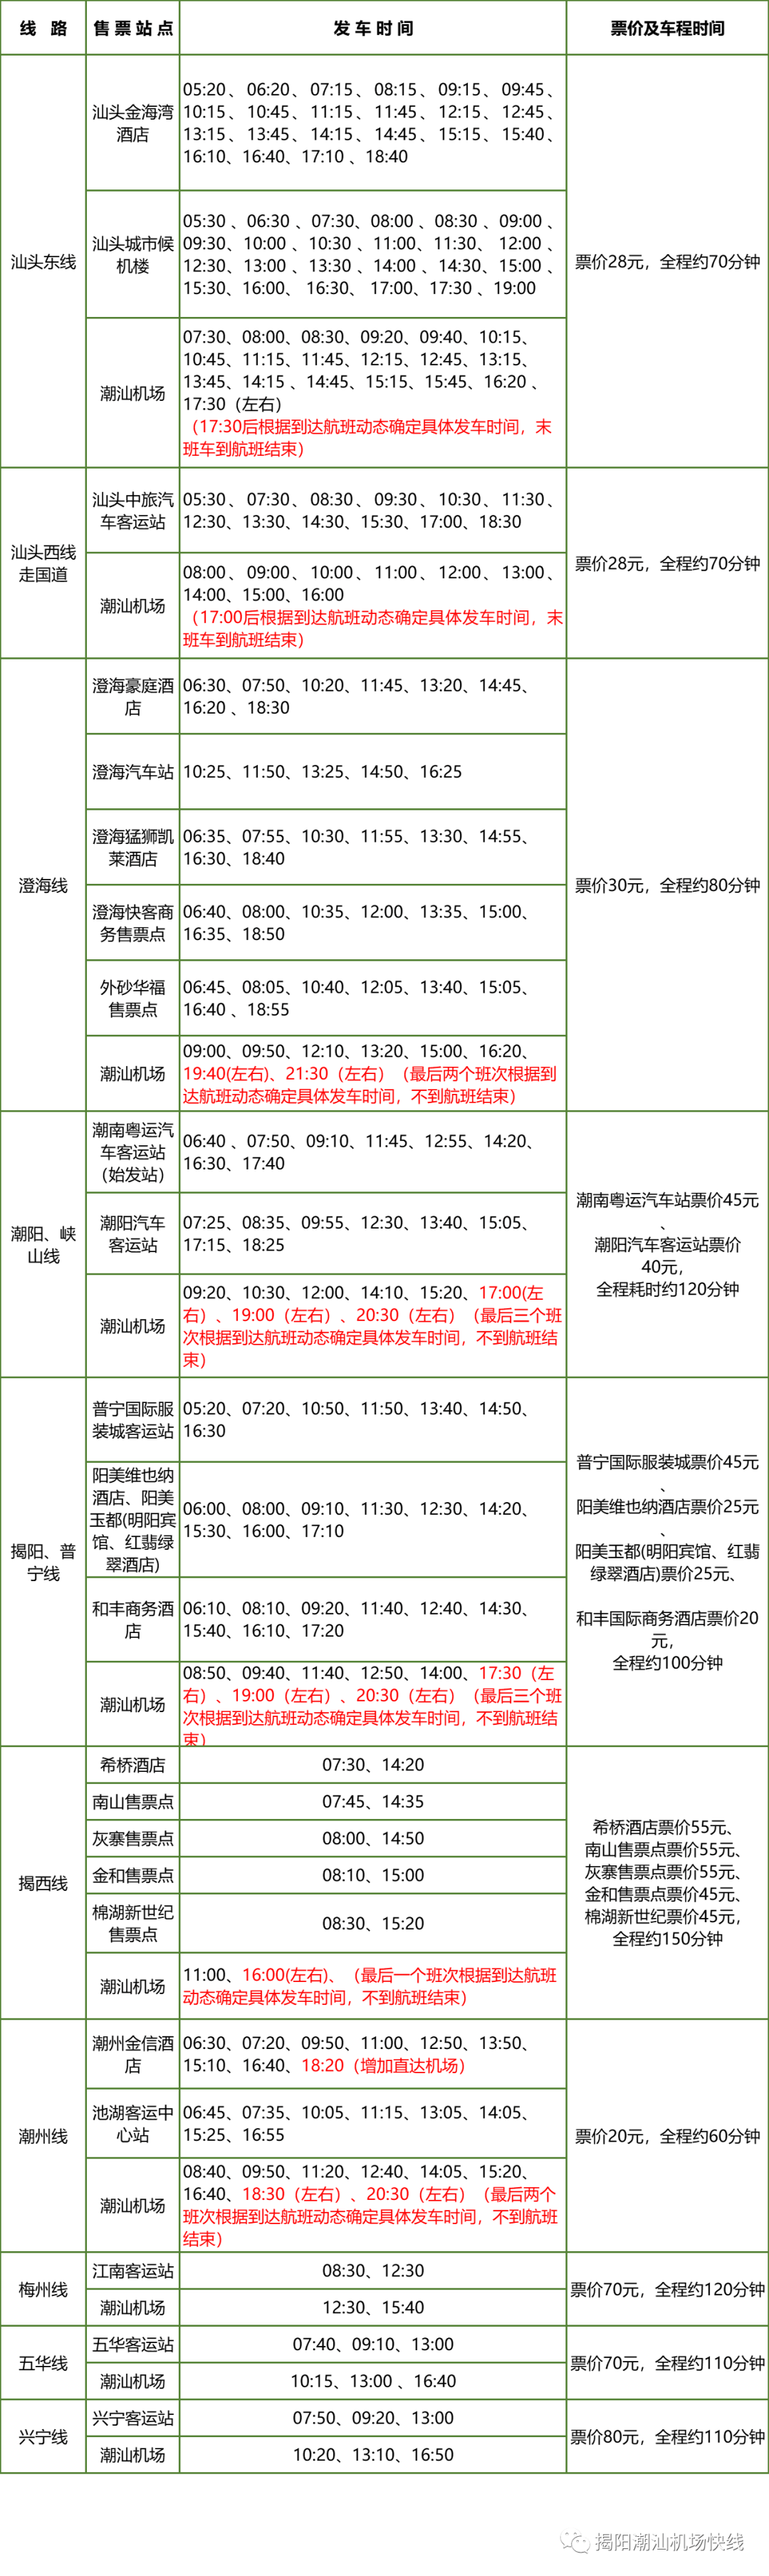 潮汕机场快线时刻表（2020年8月15日起执行）